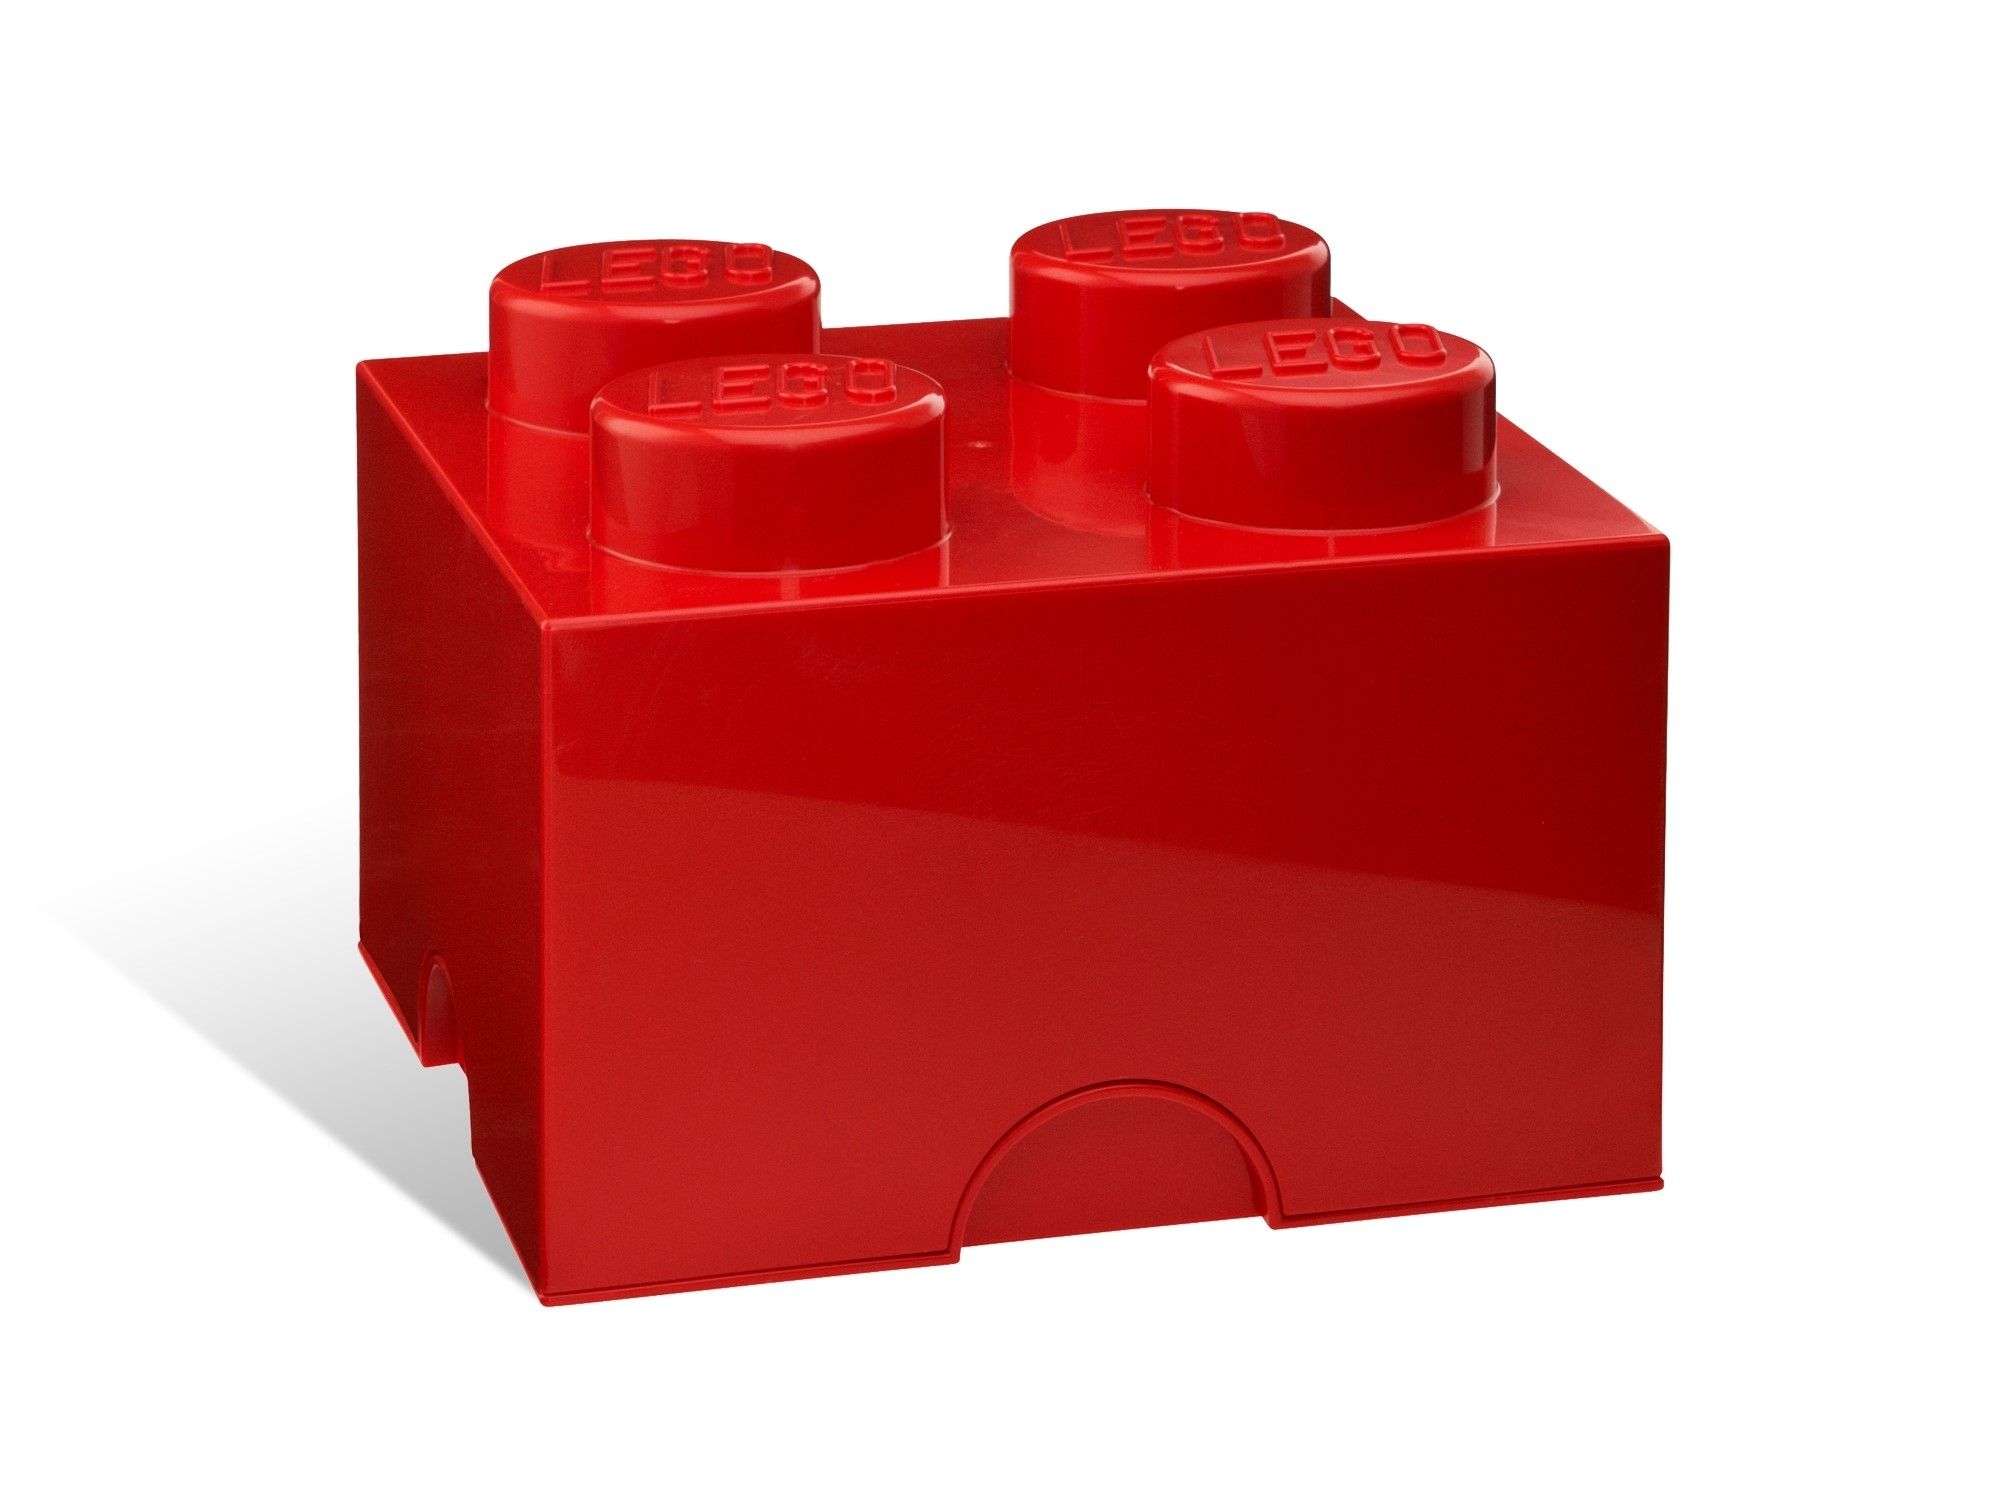 LEGO Gear 5006968 Stein mit 4 Noppen in Rot LEGO_5001385.jpg